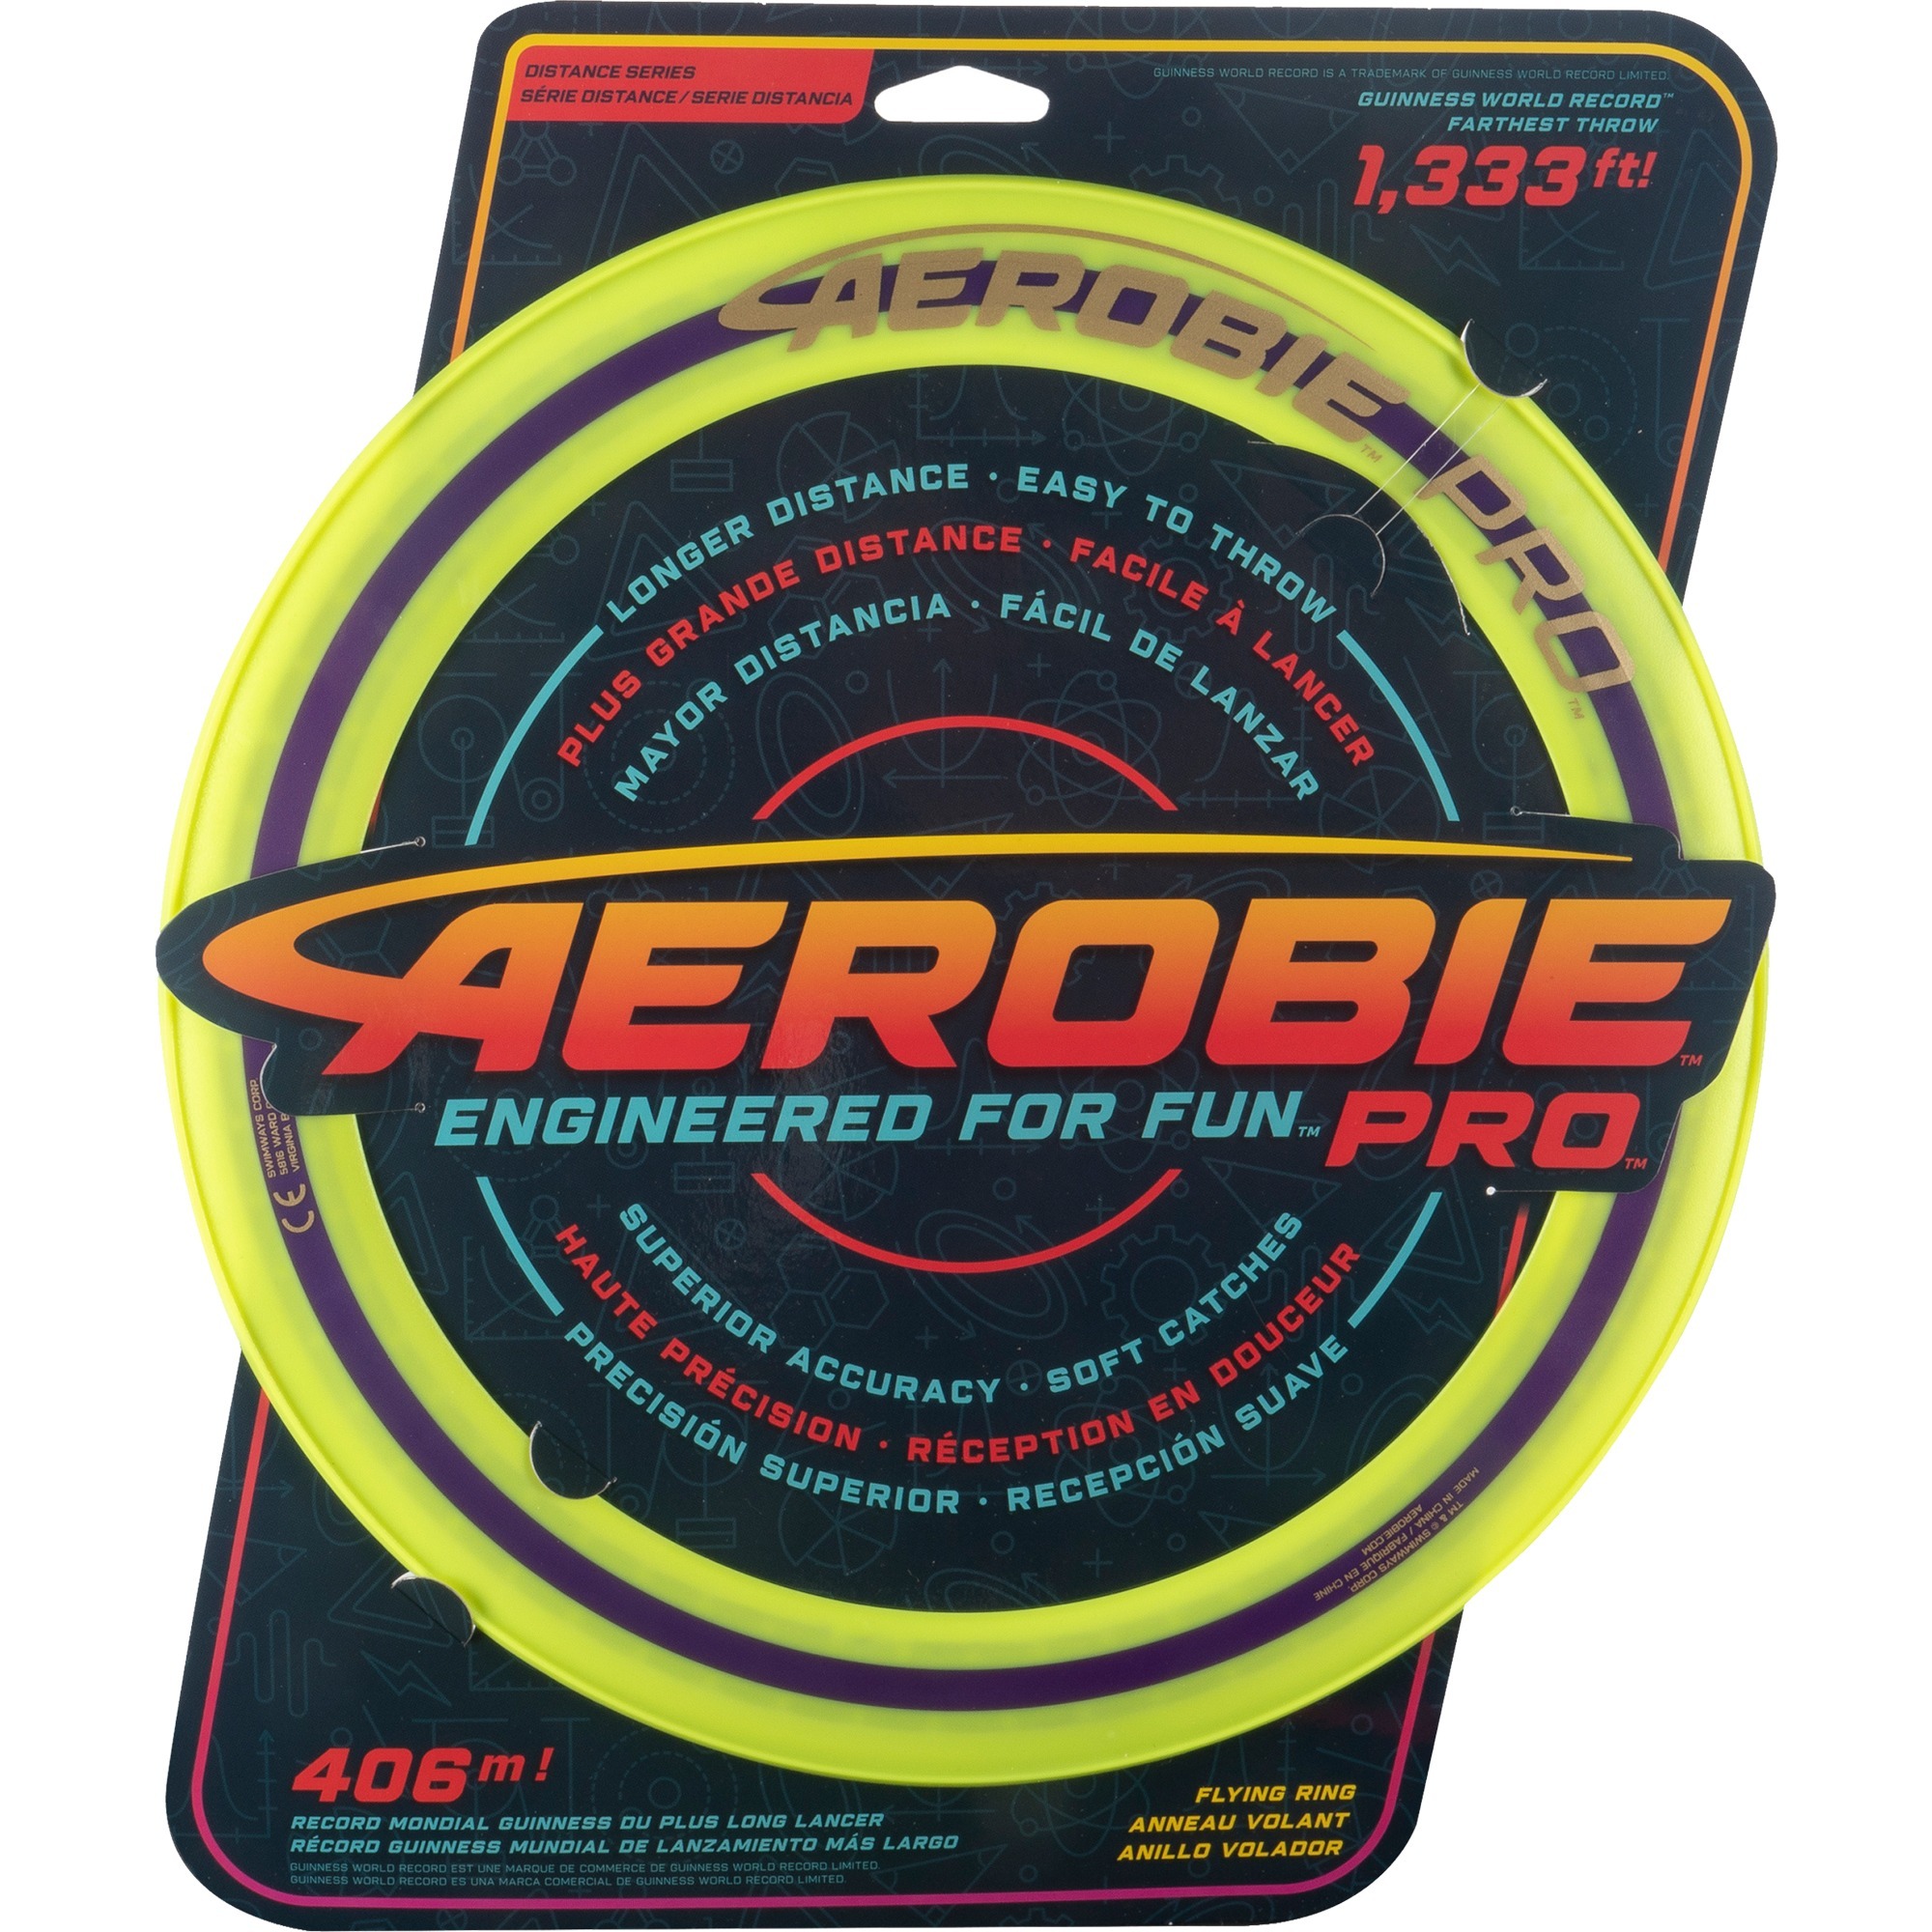 Image of Alternate - Aerobie Pro Flying Ring, Geschicklichkeitsspiel online einkaufen bei Alternate